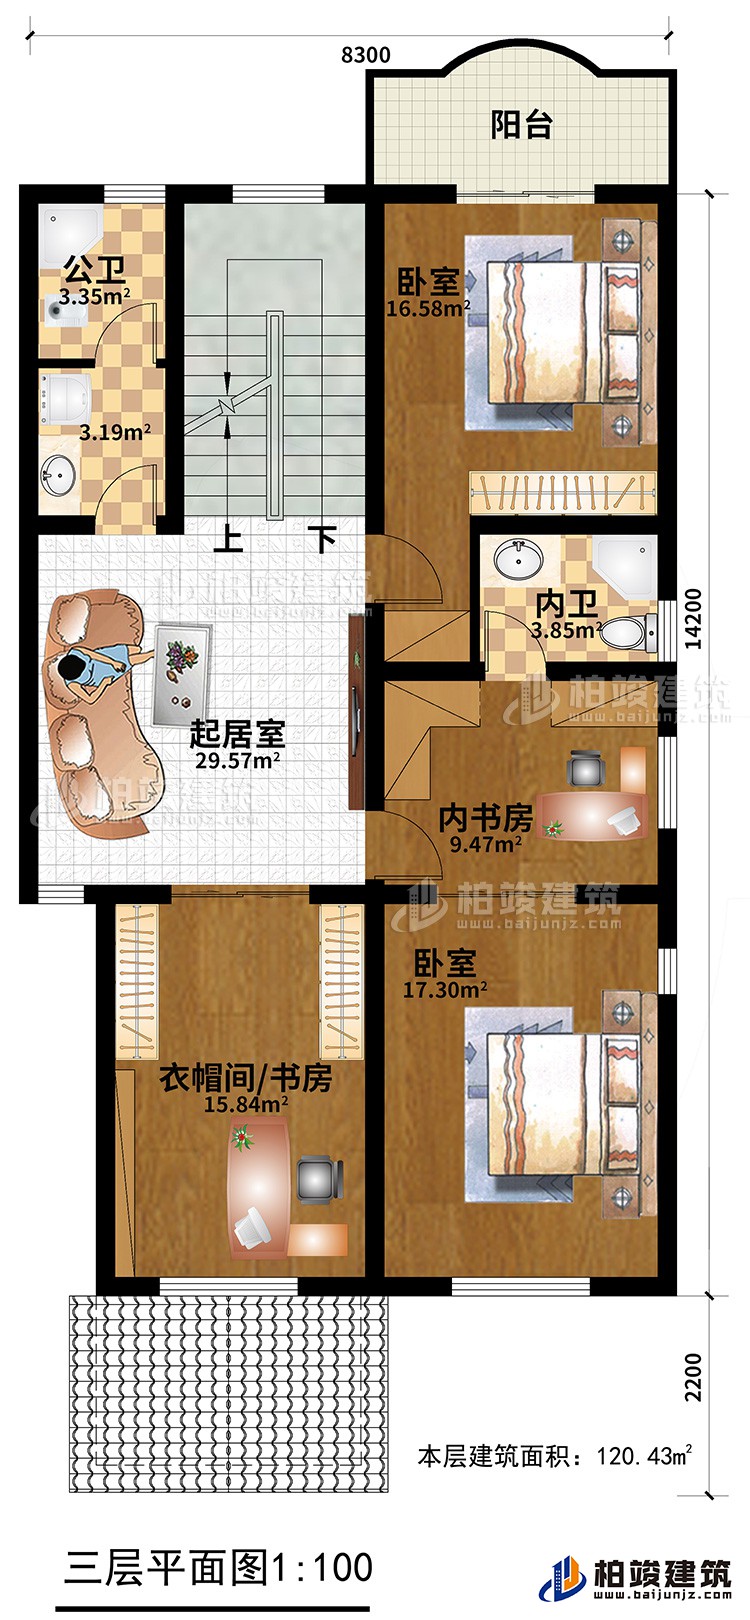 三层：2卧室，公卫，内卫，内书房，起居室，书房/衣帽间，阳台